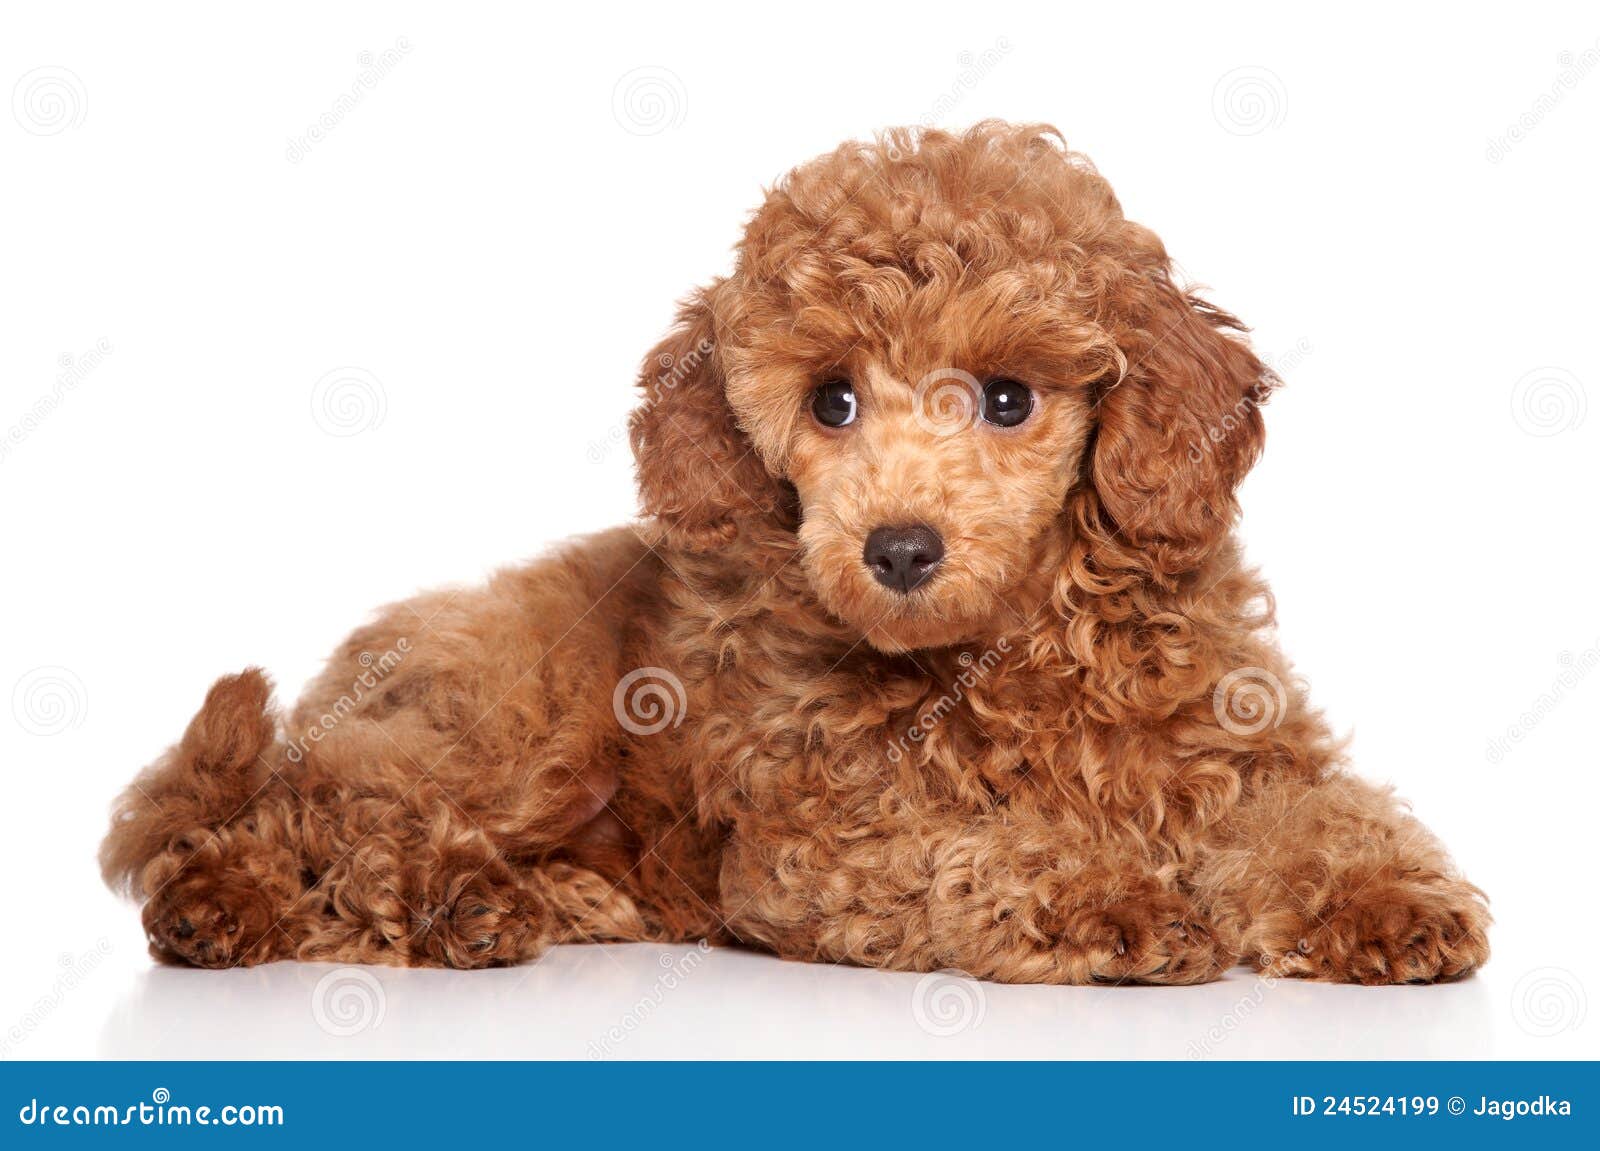 miniature poodle puppy